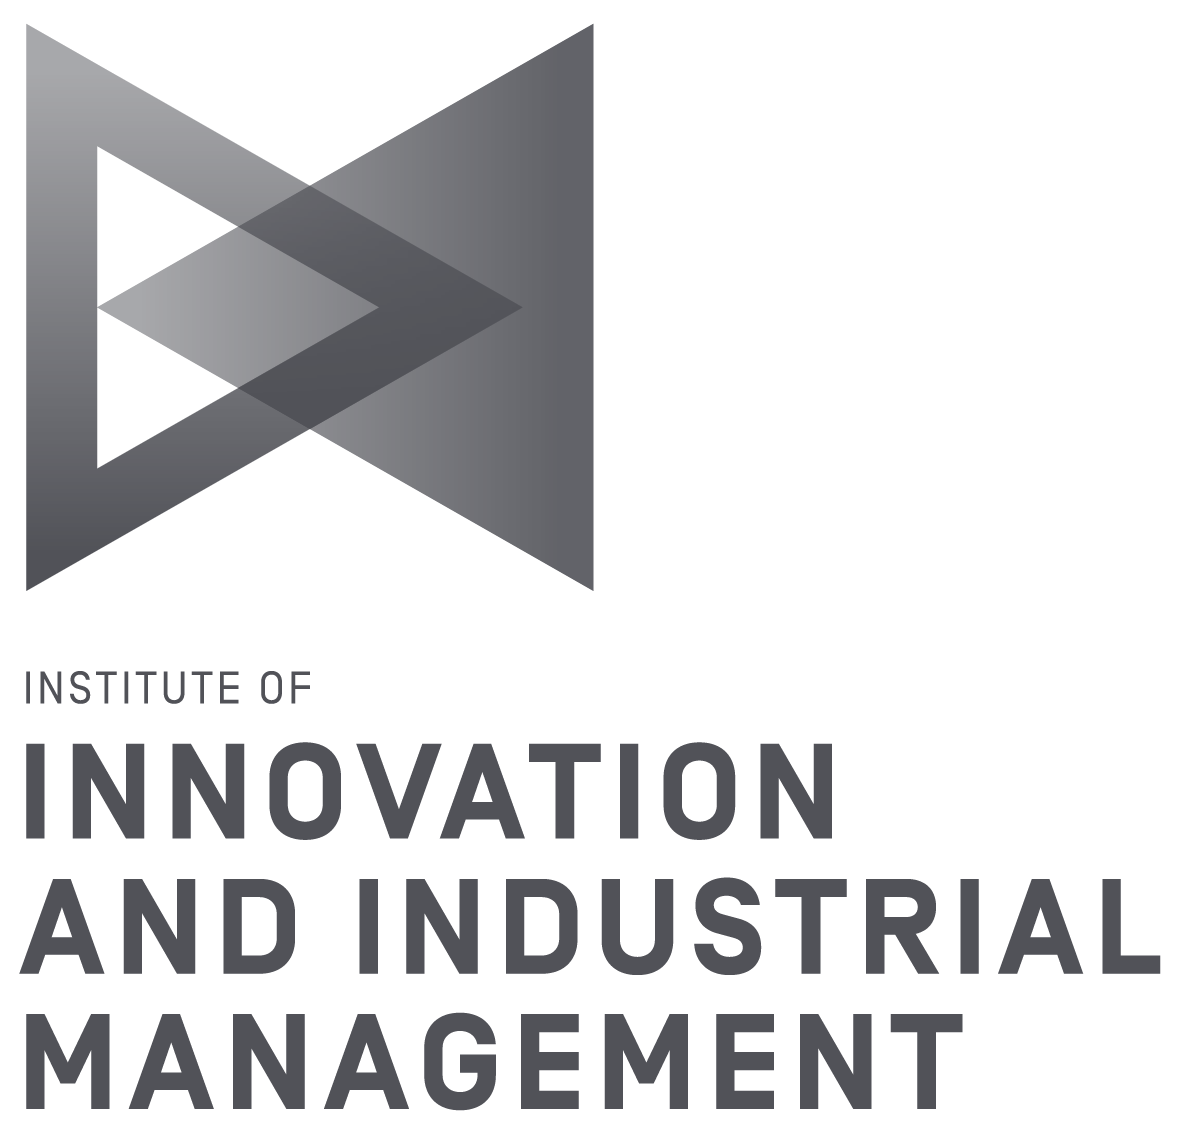 TU Graz Institut für Innovation und Industrie Management